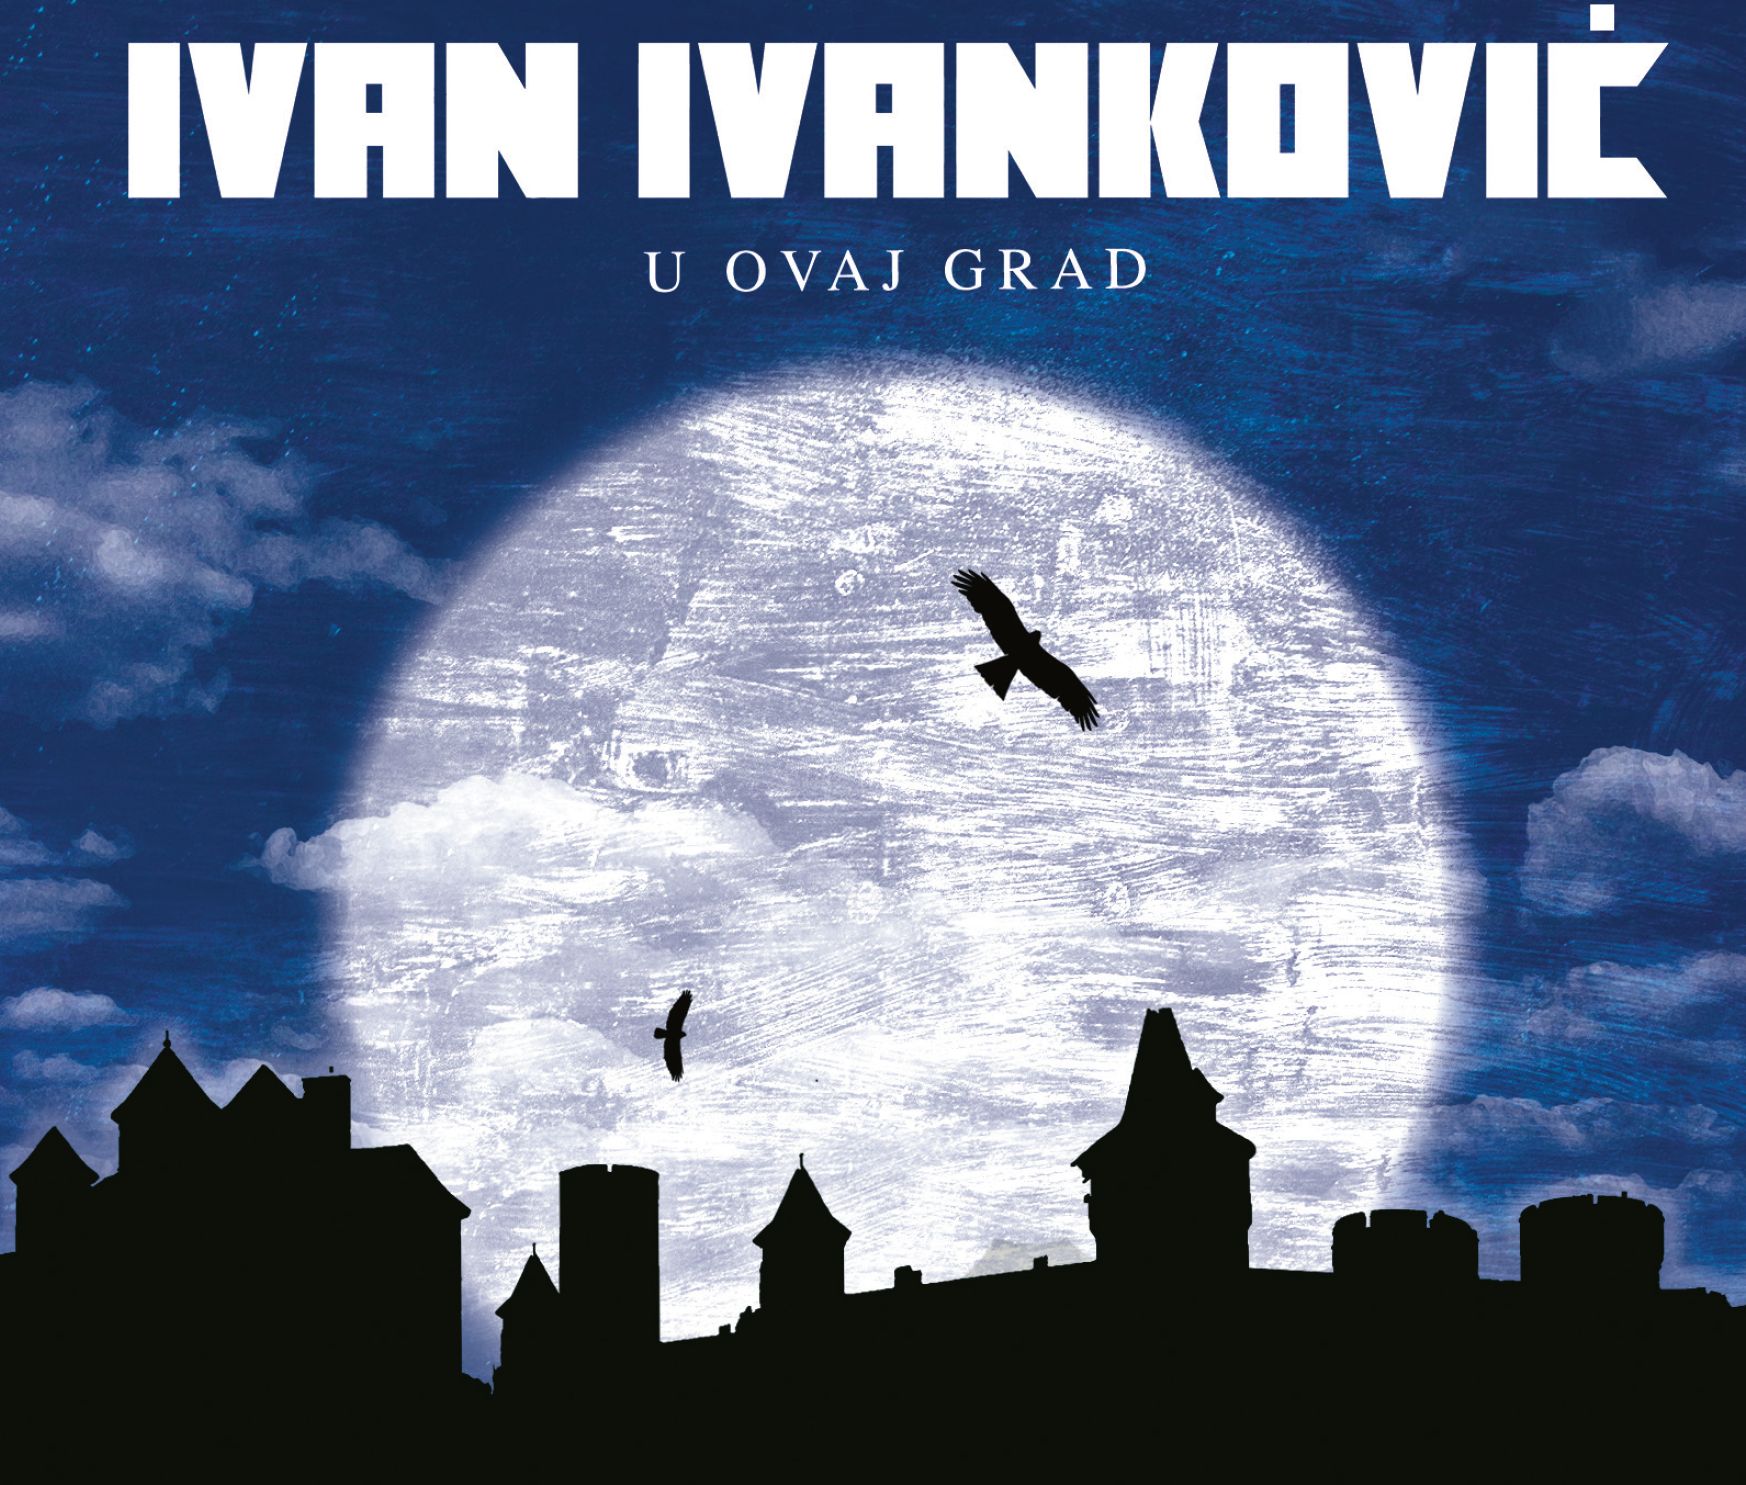 Kantautor, pjevač i gitarist Ivan Ivanković objavio studijski album “U ovaj grad”